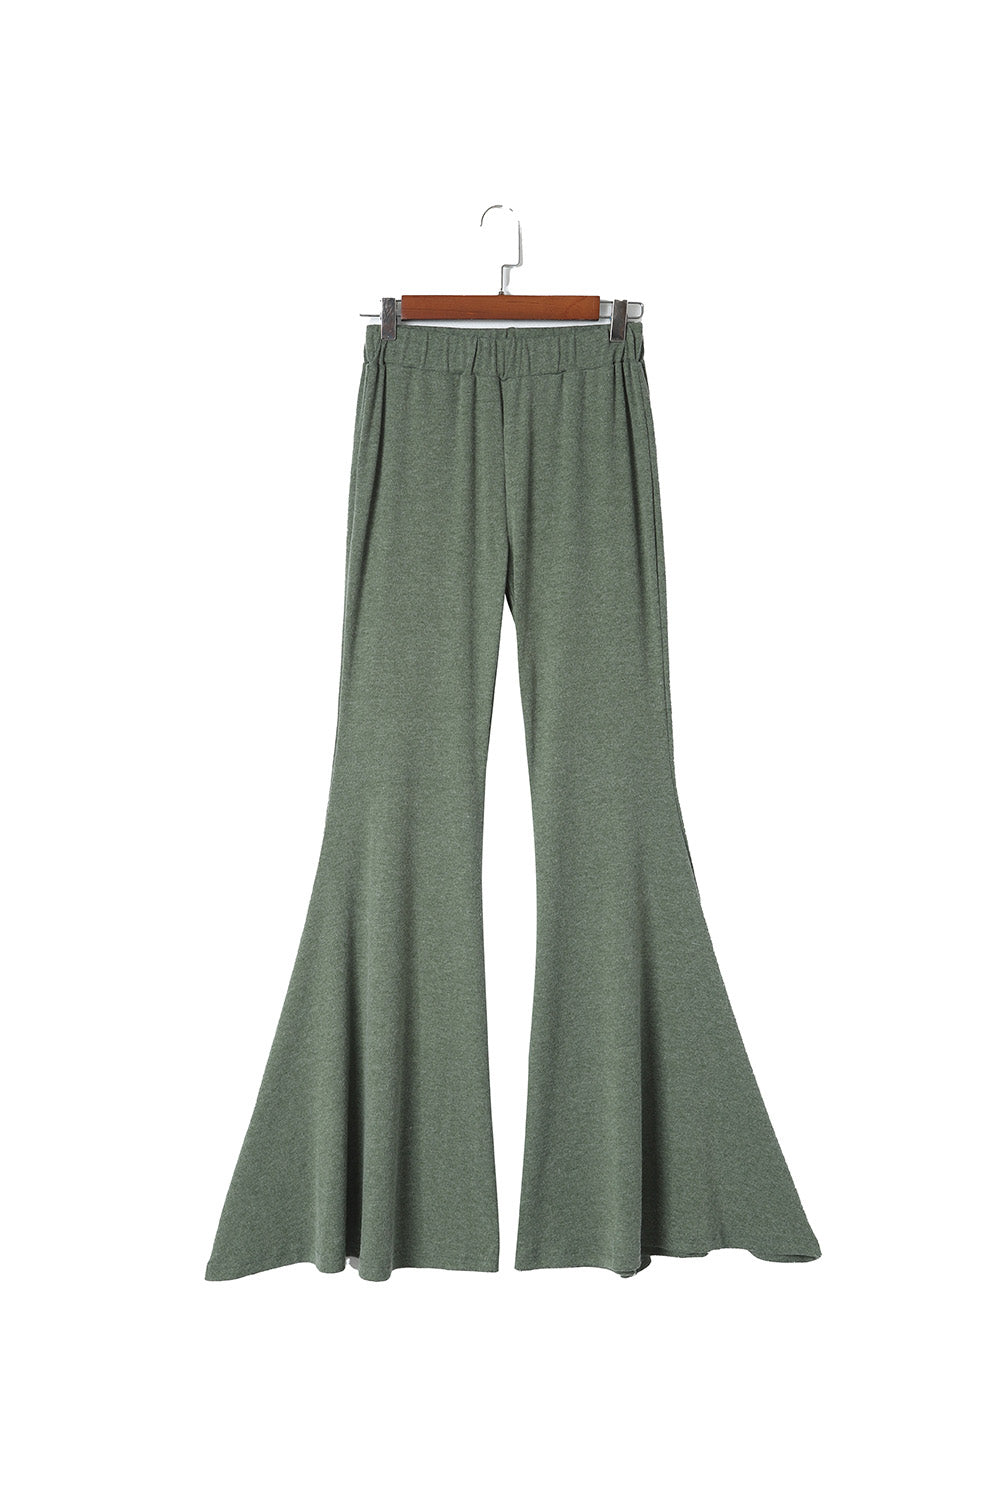 Pantalon vert taille haute ajusté et évasé